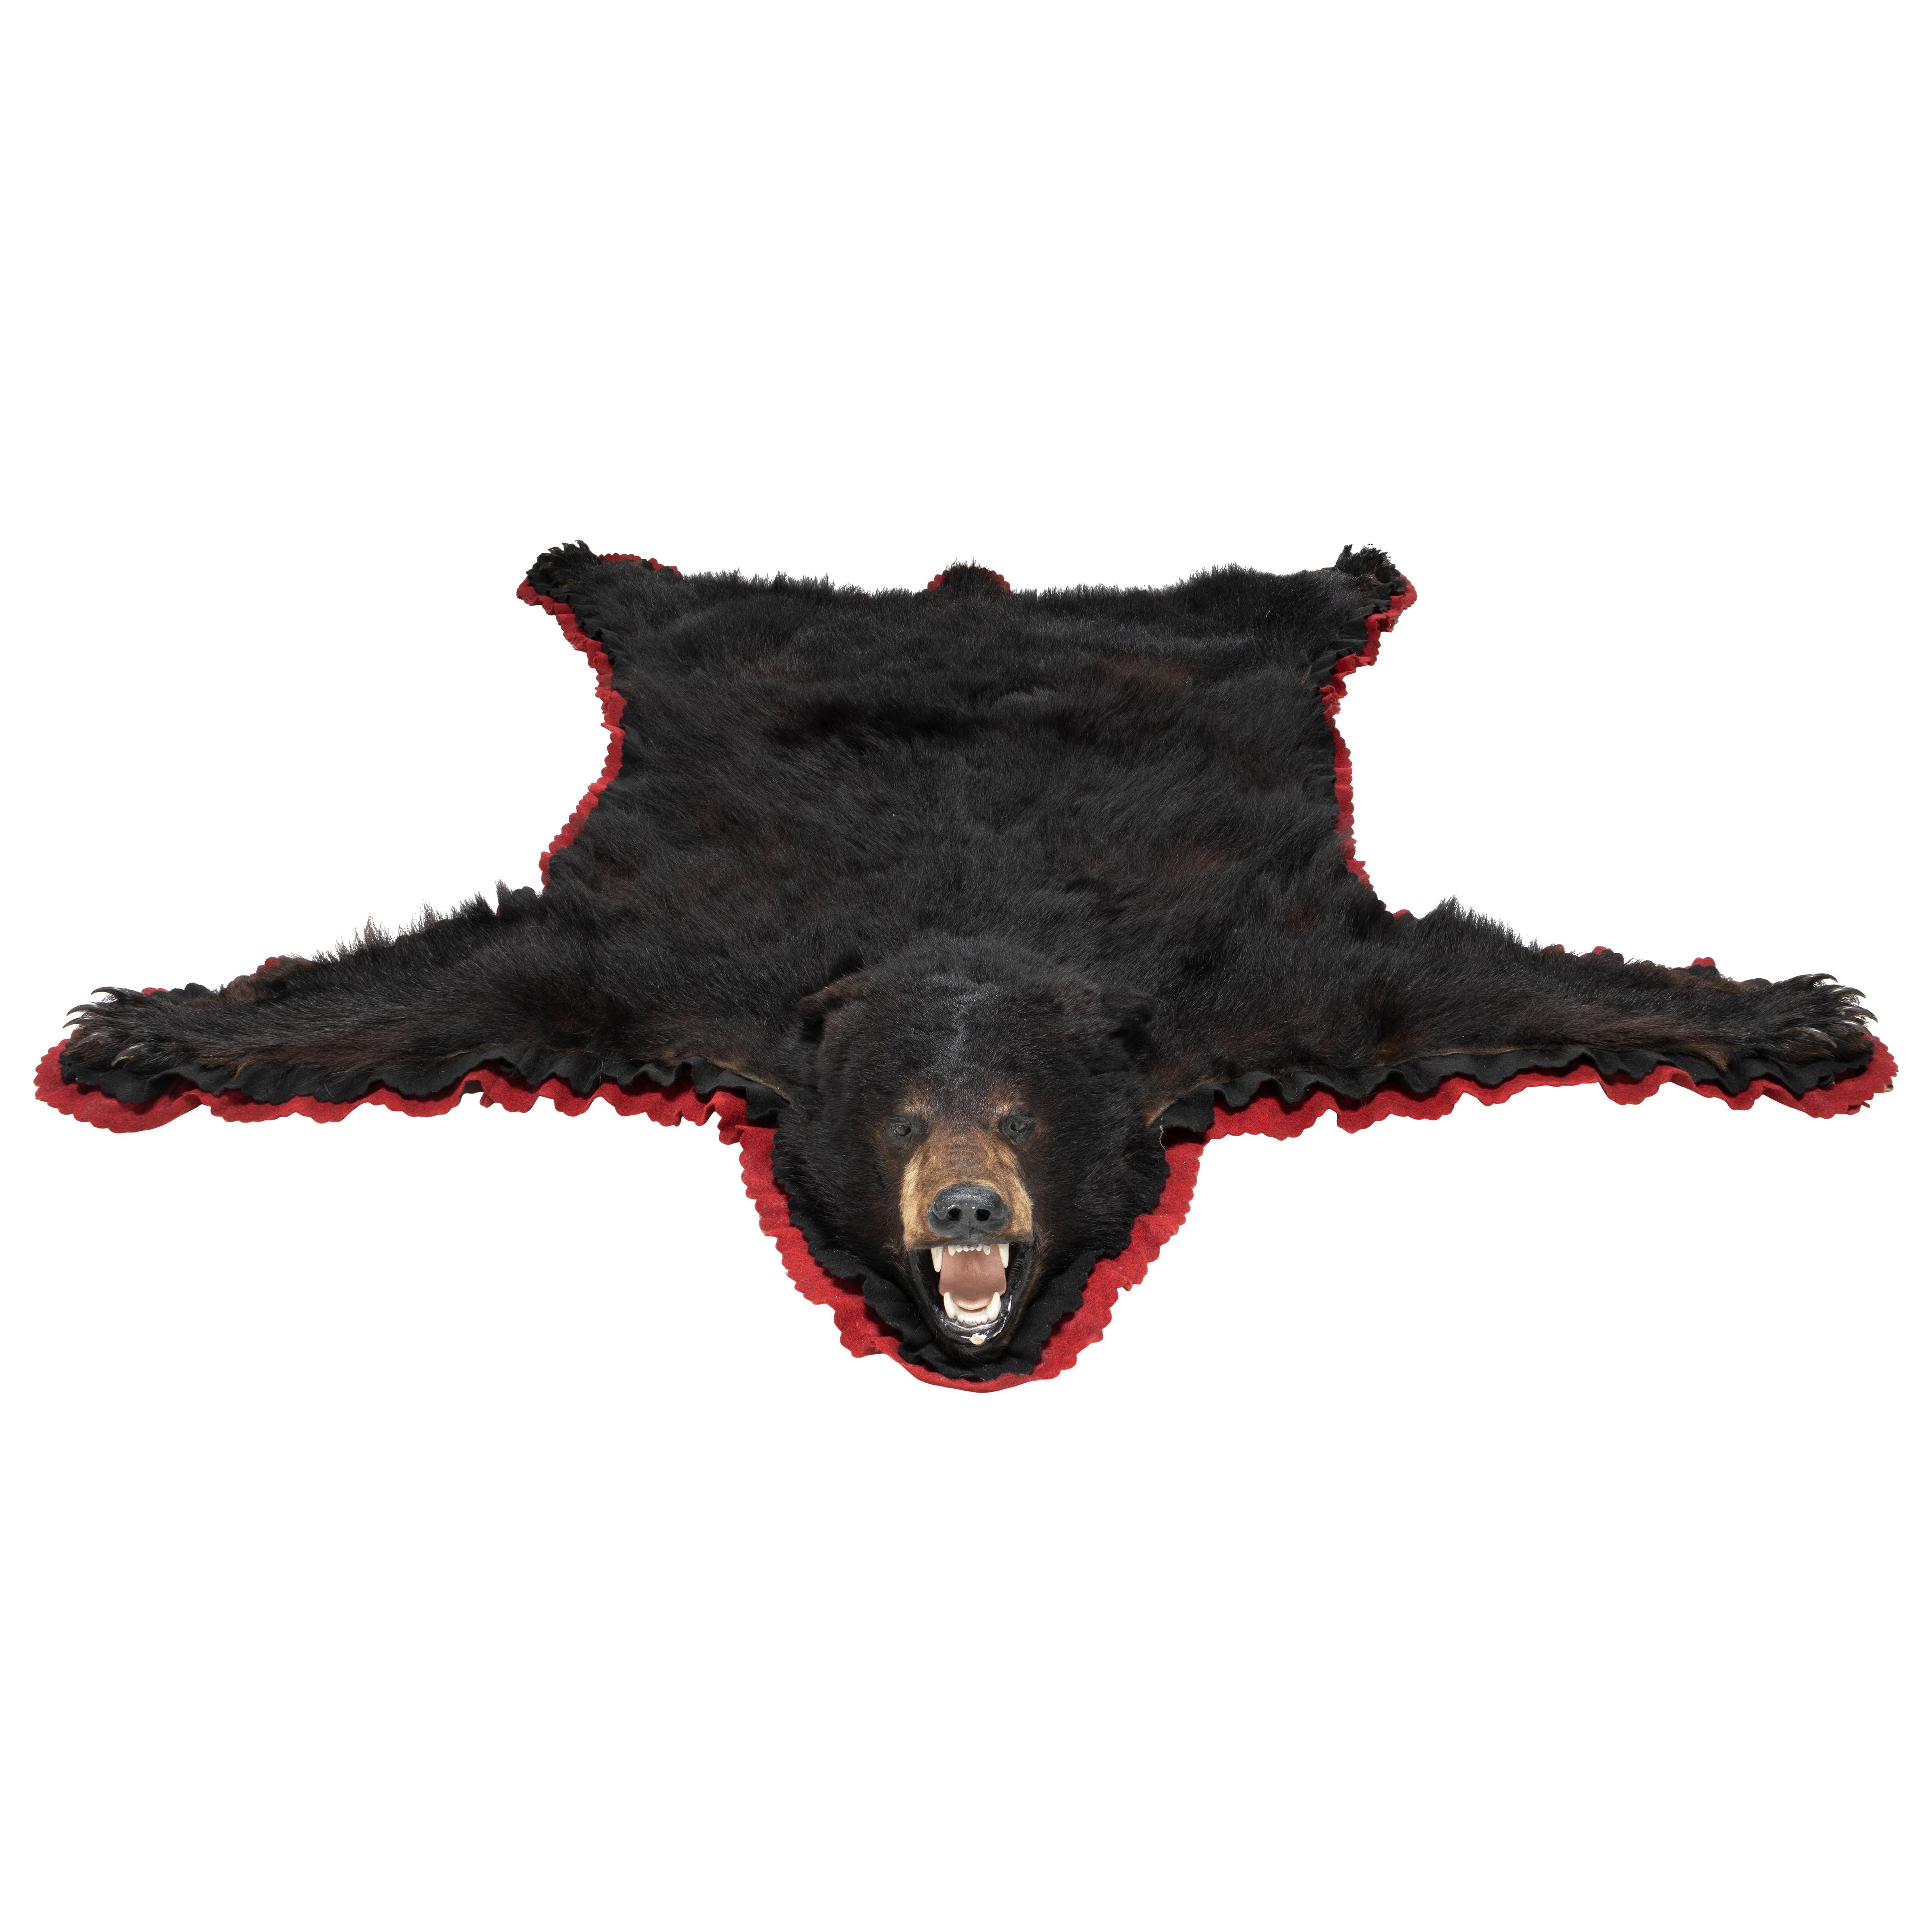 American Black Bear Taxidermy Rug For Sale